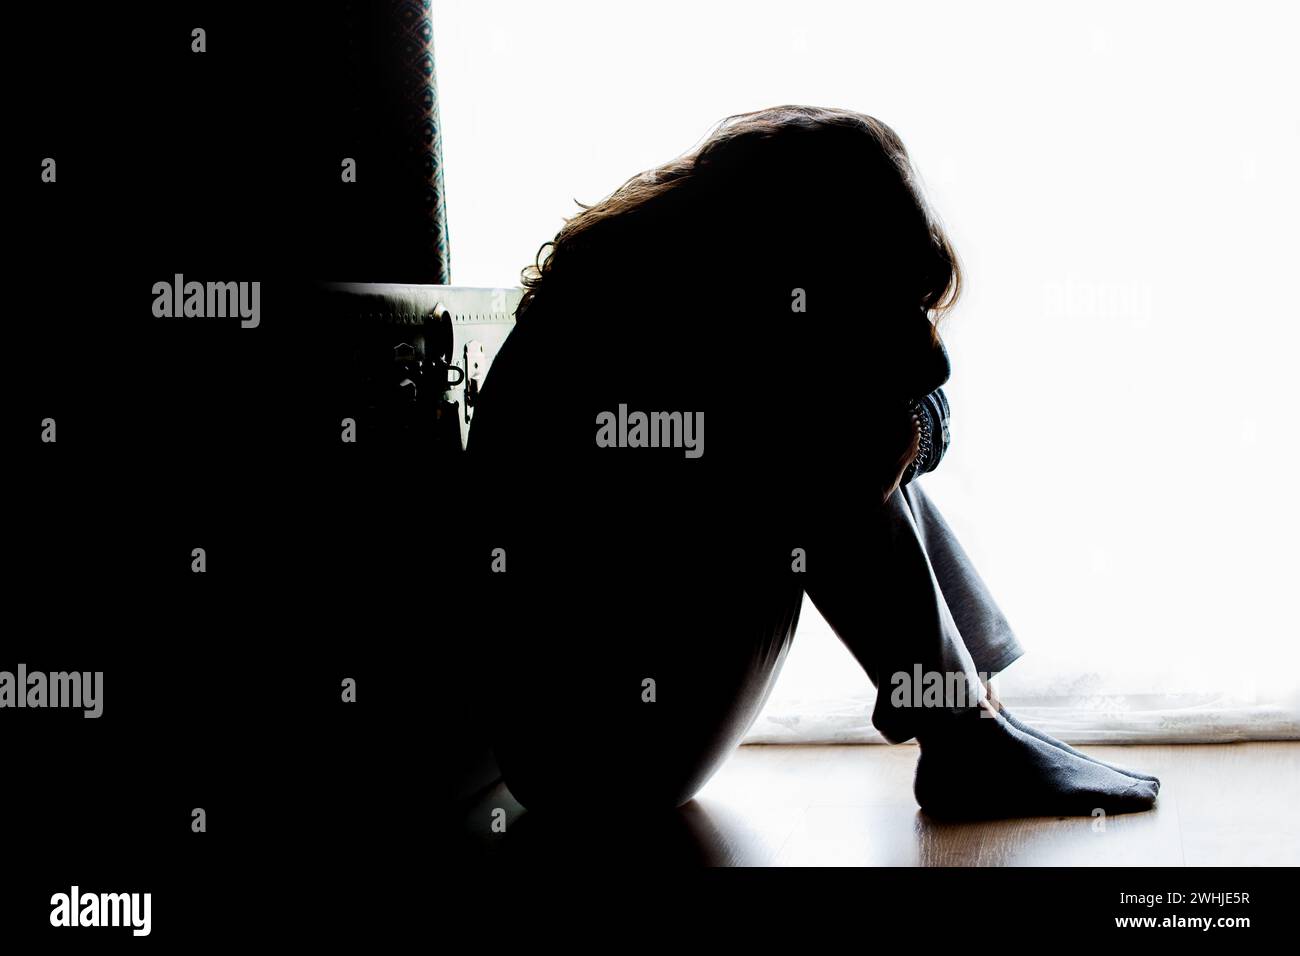 Infeliz mujer madura, mujer en silueta, sentado en el suelo con la espalda iluminada. Pensamientos deprimentes. Foto de stock